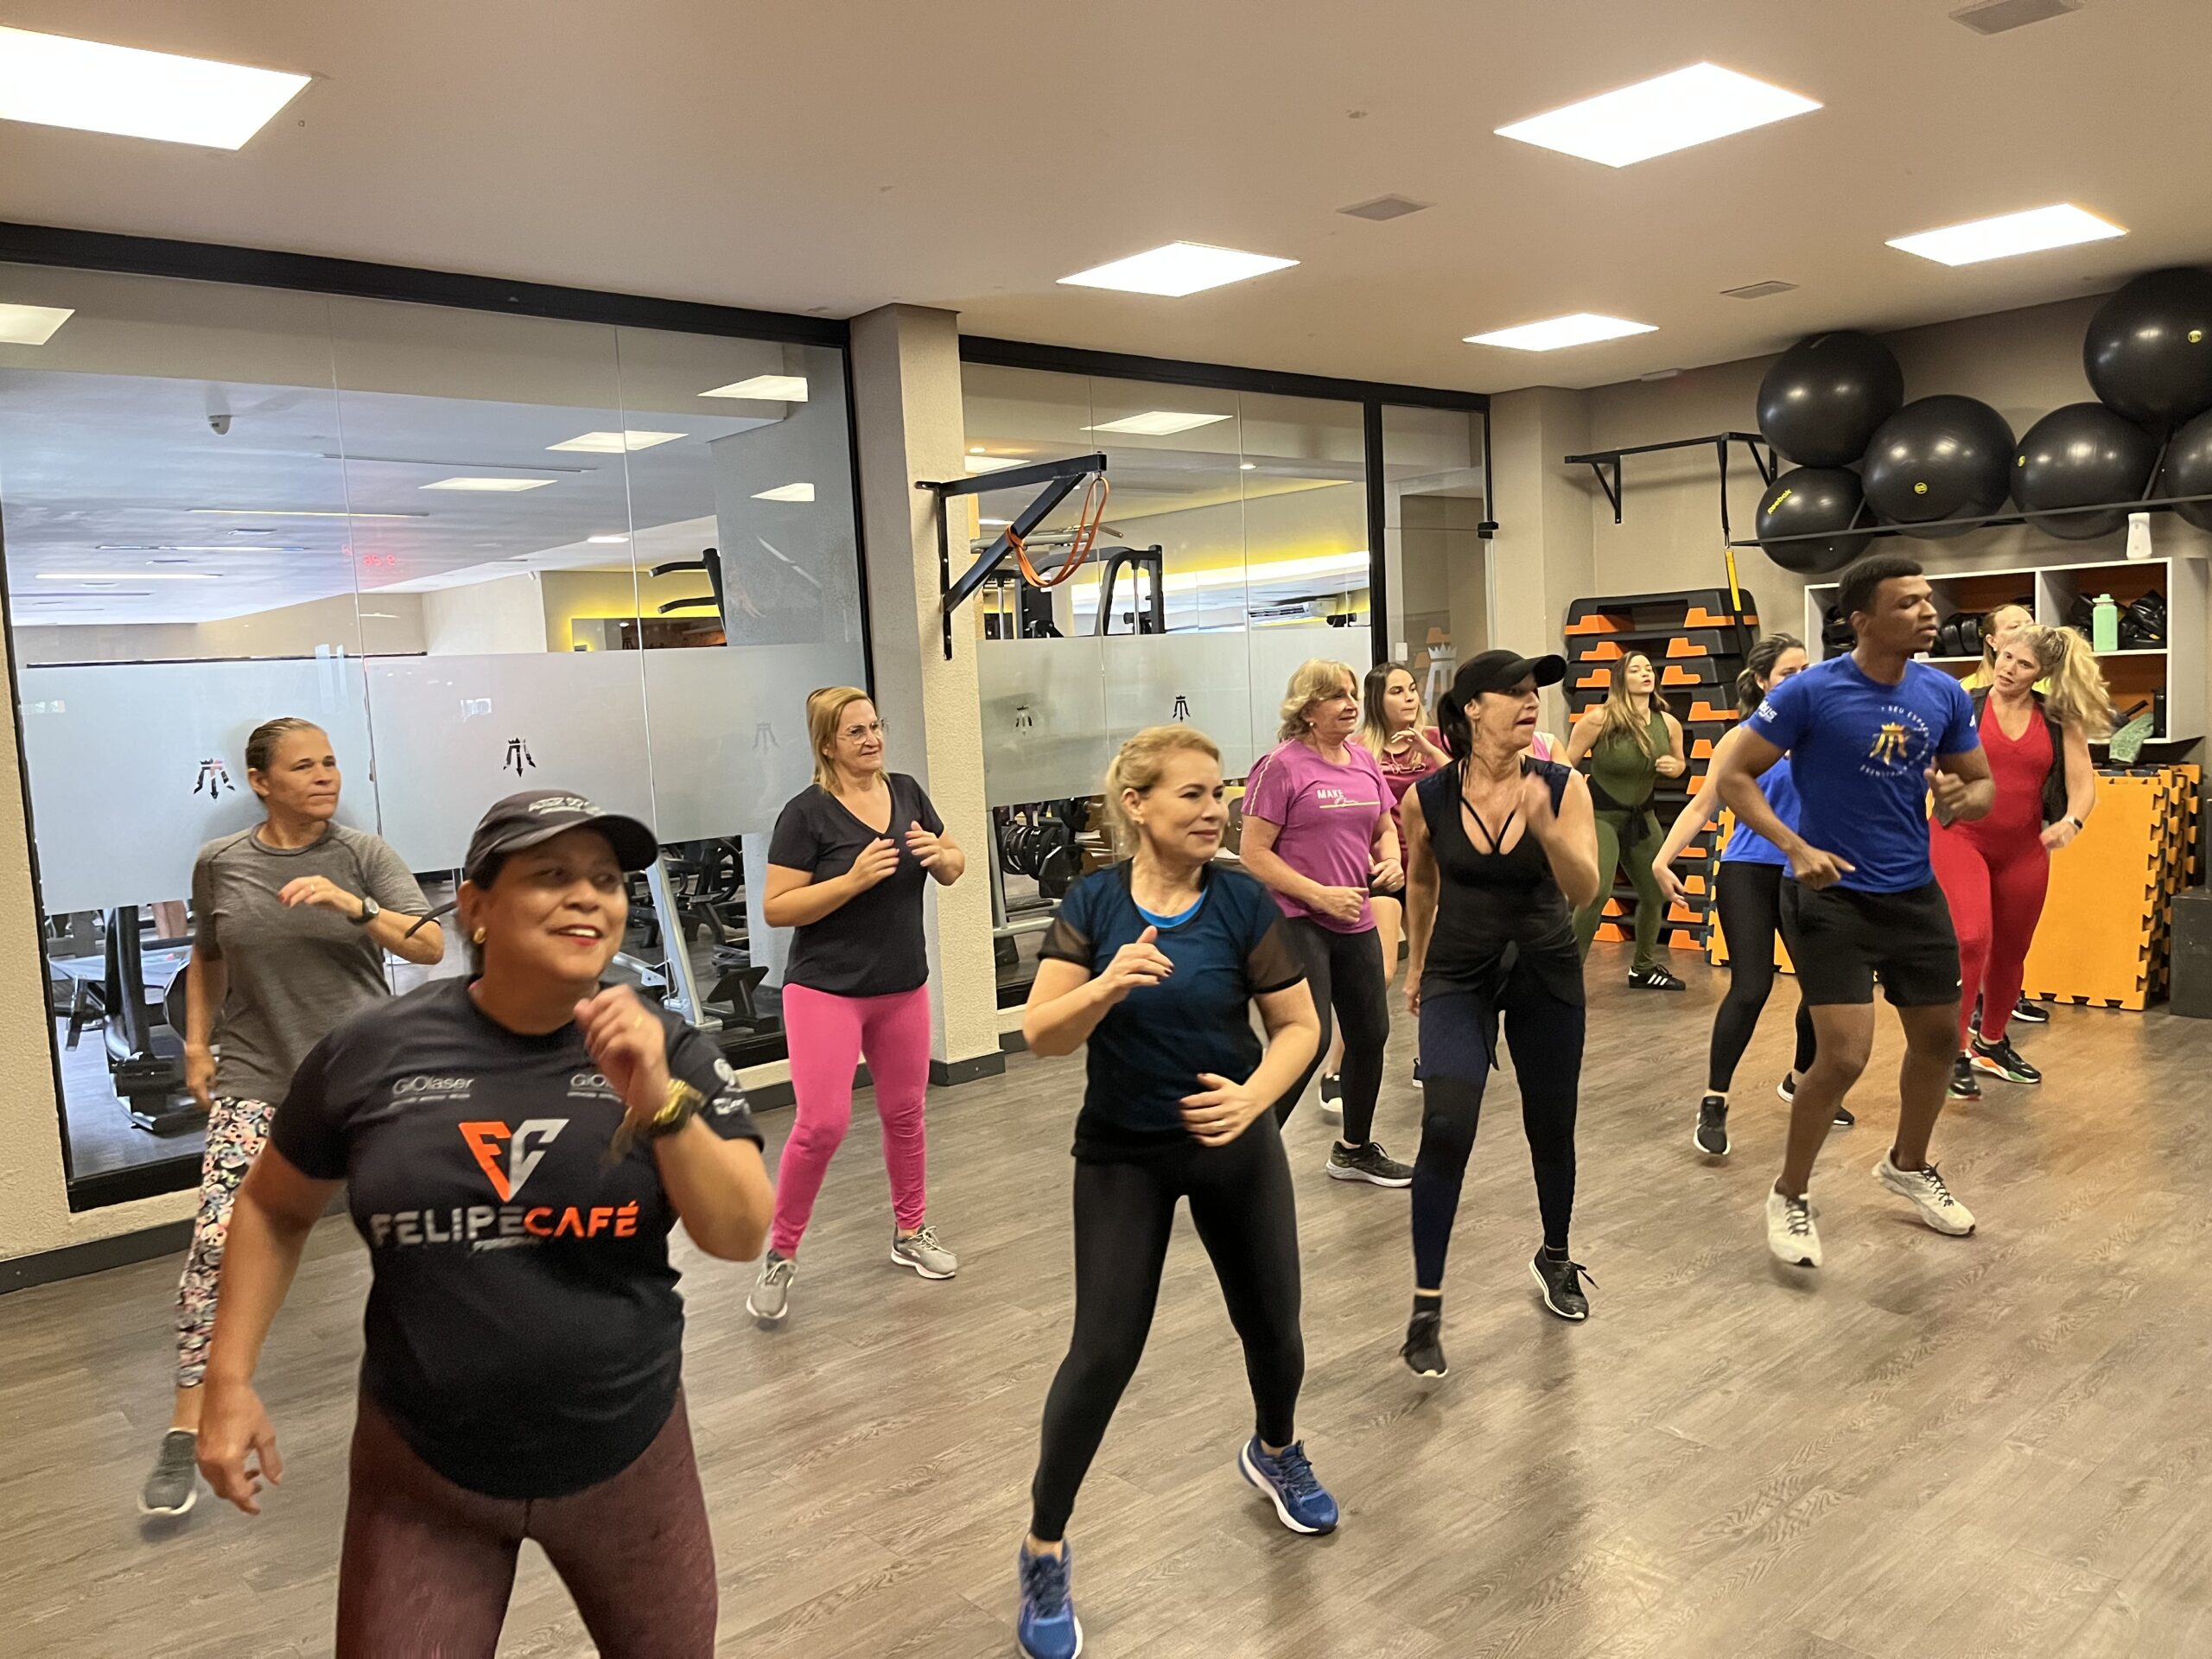  FIT DANCE 45′ |  Modalidade Prem1um Fitness | Academia em Maceió | O seu espaço fitness e wellness em Maceió